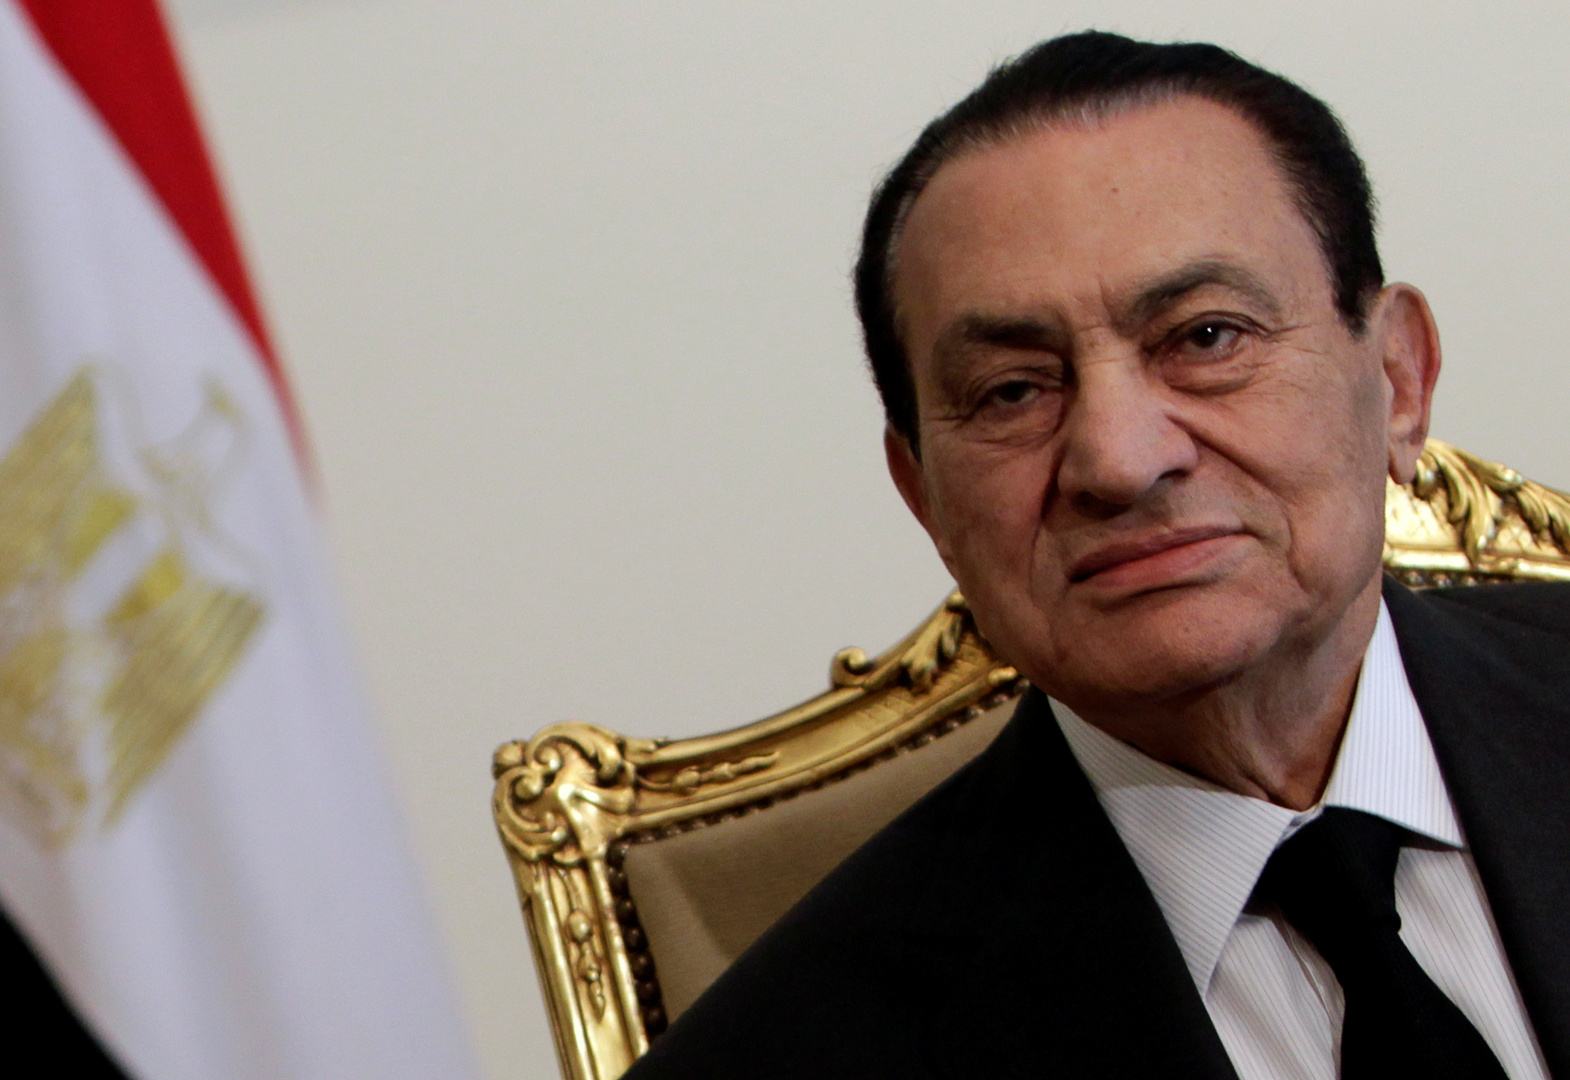 علاء مبارك يهاجم مصطفى بكري بعد كشفه مستندات حول قرار مبارك تبعية تيران وصنافير للسعودية